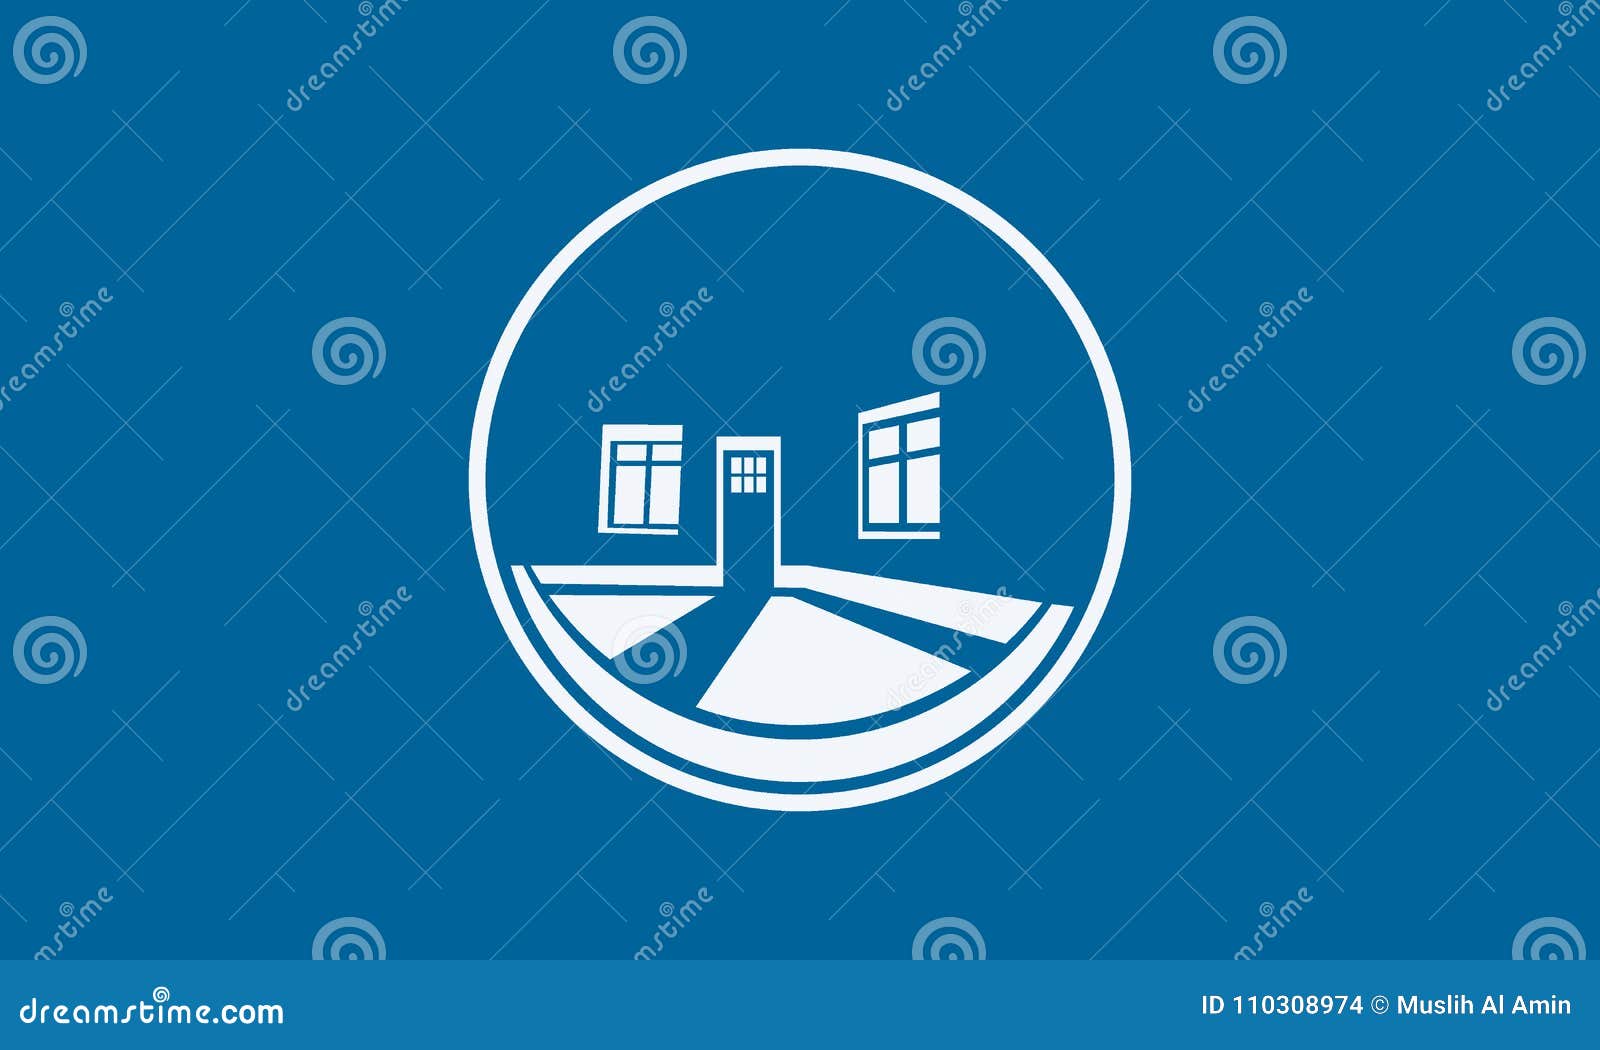 House Logo Design Exterior And Interior Design Stock